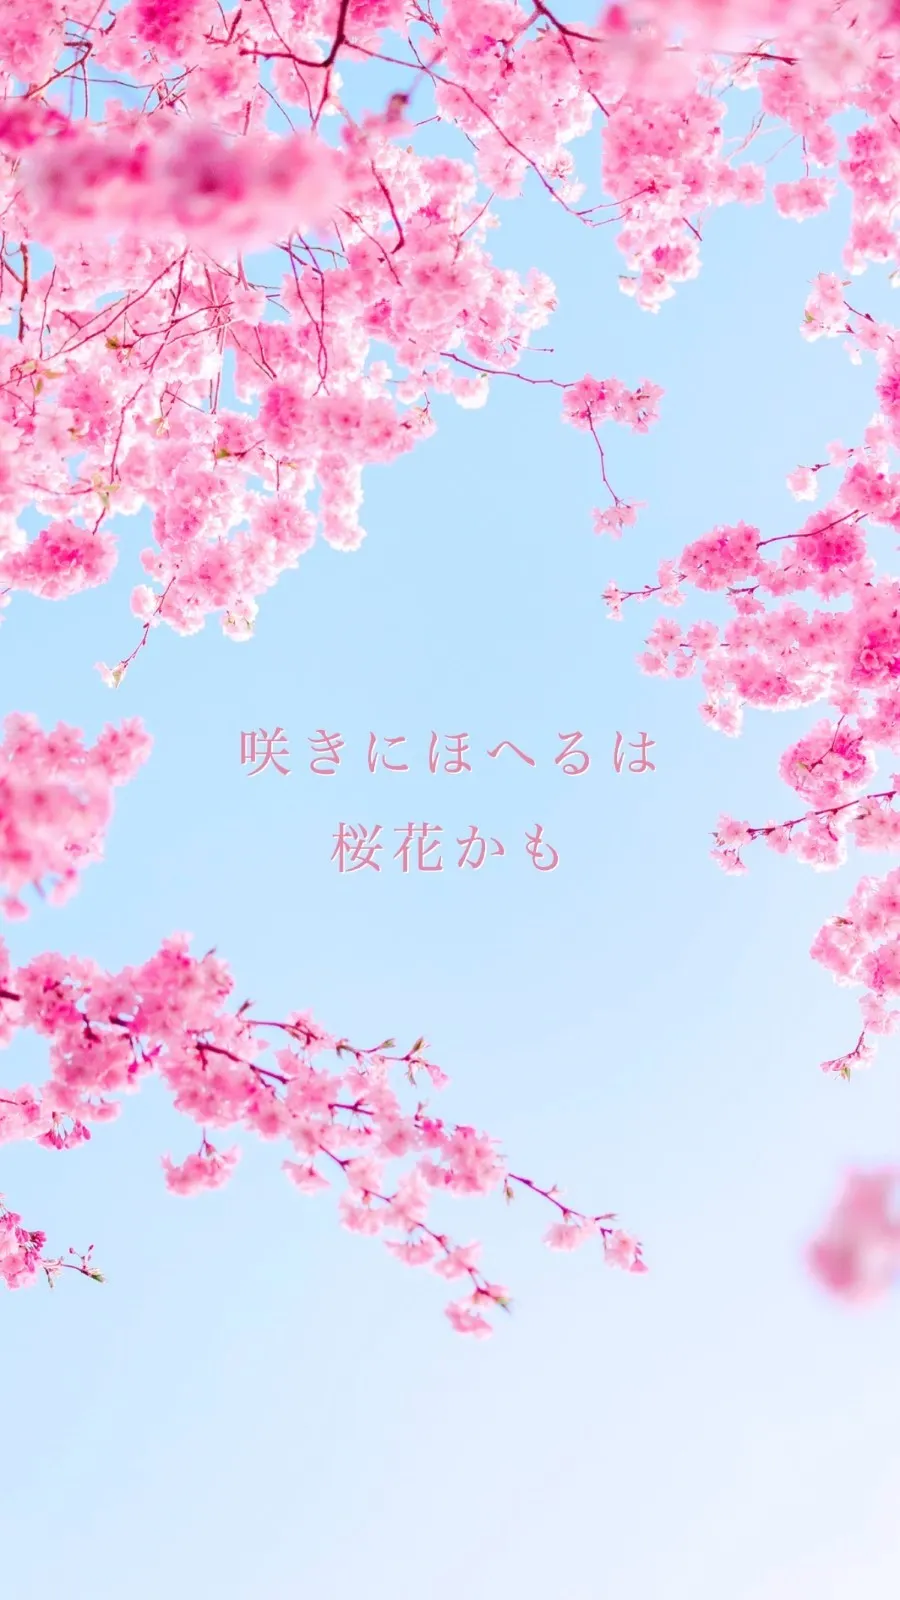 Cherry blossom full bloom